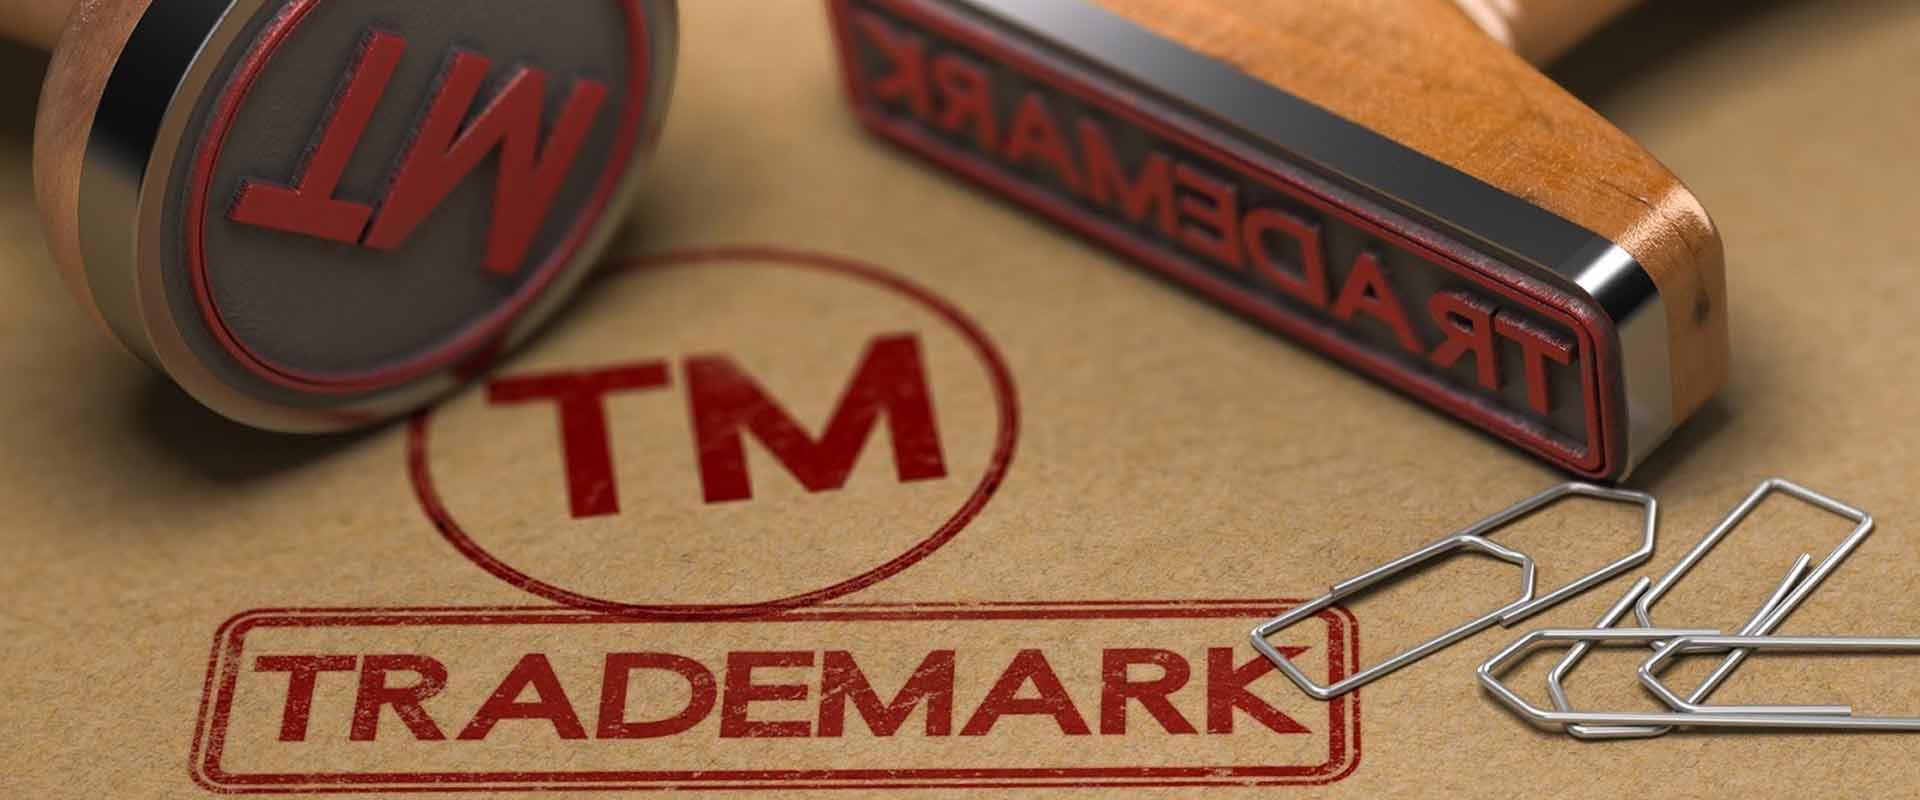 Trademark là gì